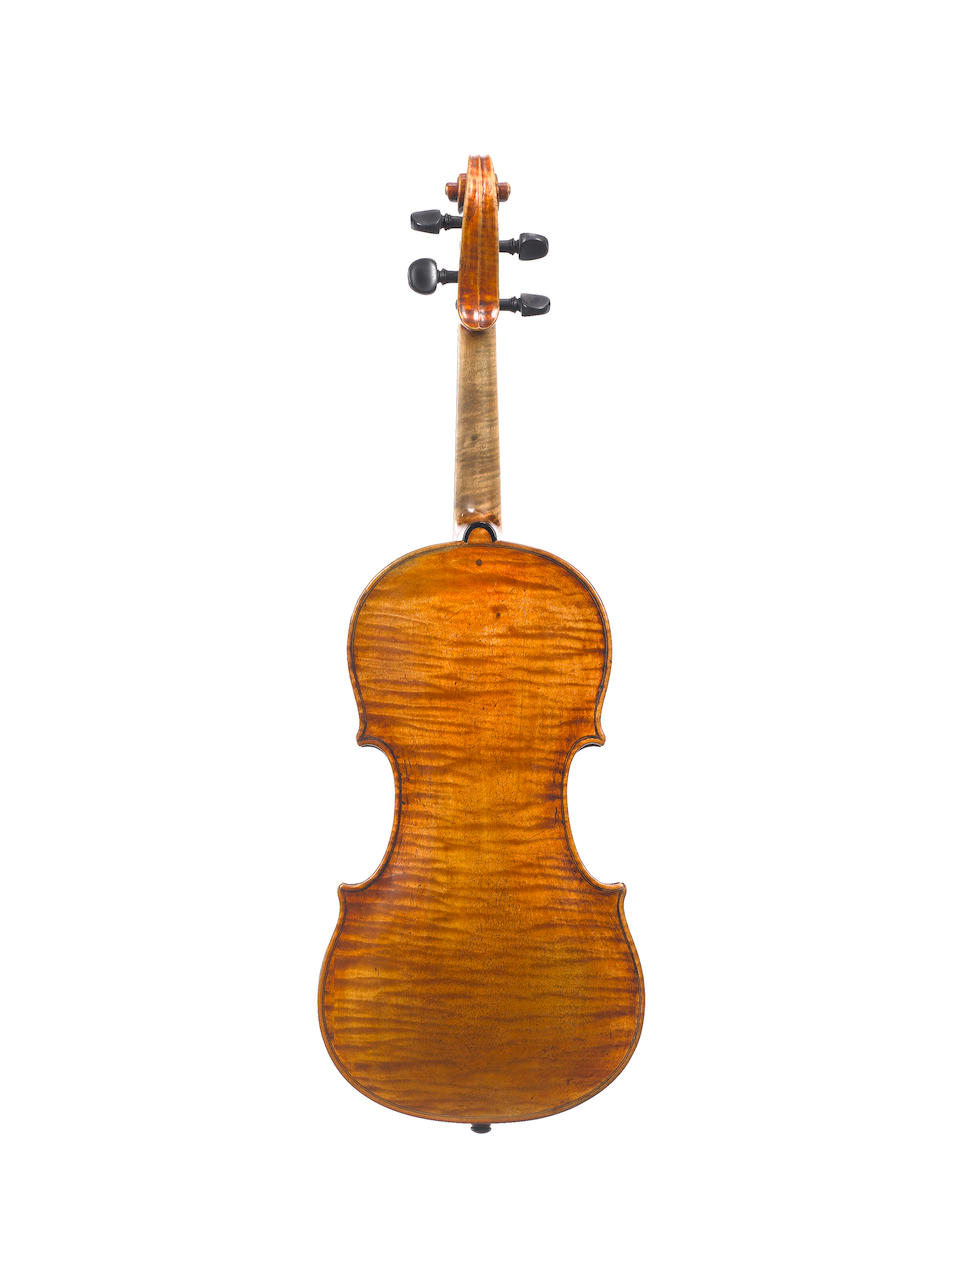 An Italian Violin of the Andrea Guarneri School, circa 1690